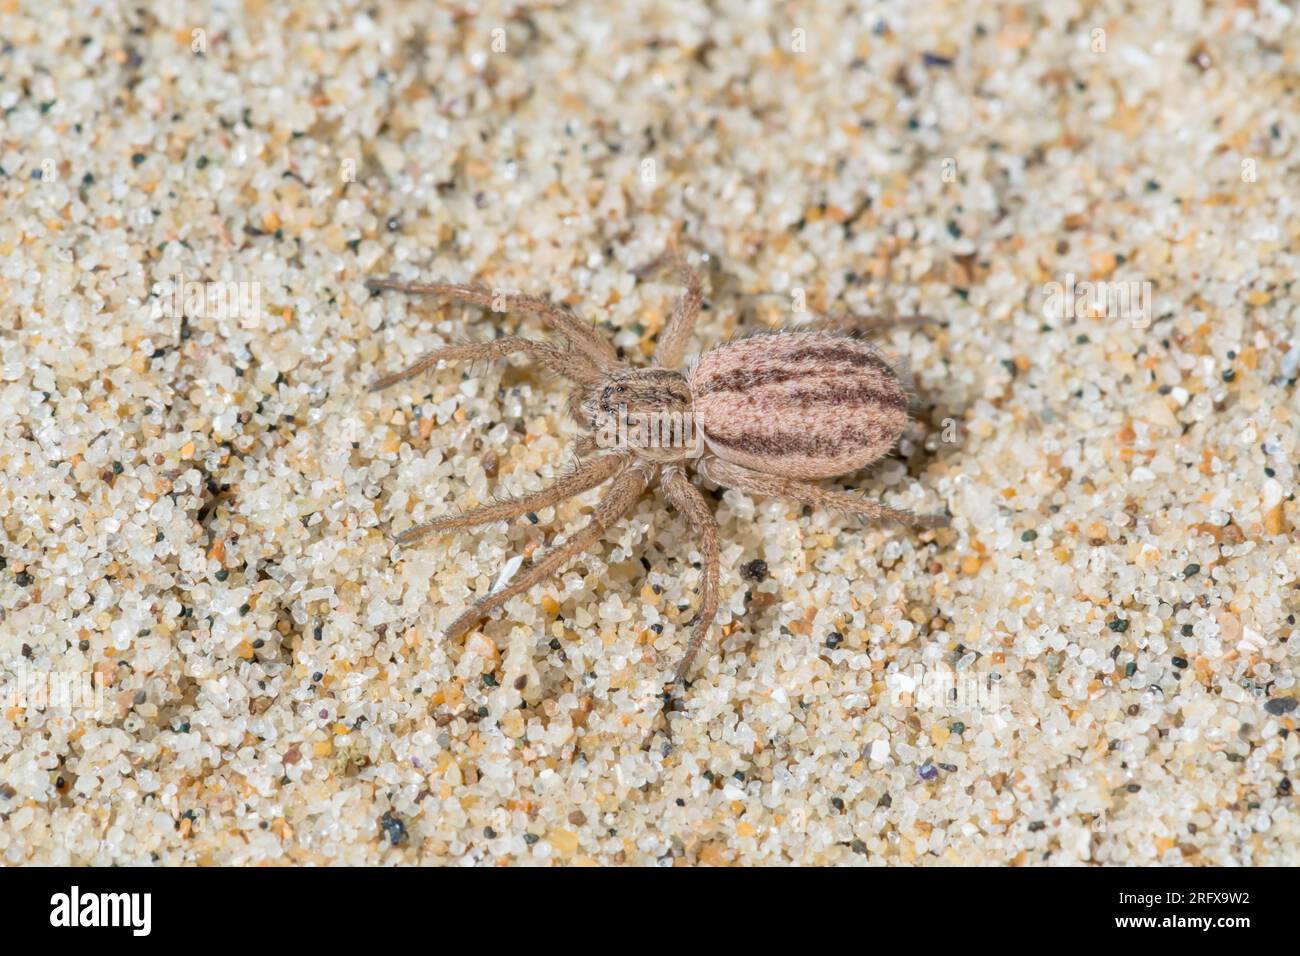 Female Five striped Running Crab Spider (Thanatus striatus). Philodromidae. Sussex, UK Stock Photo